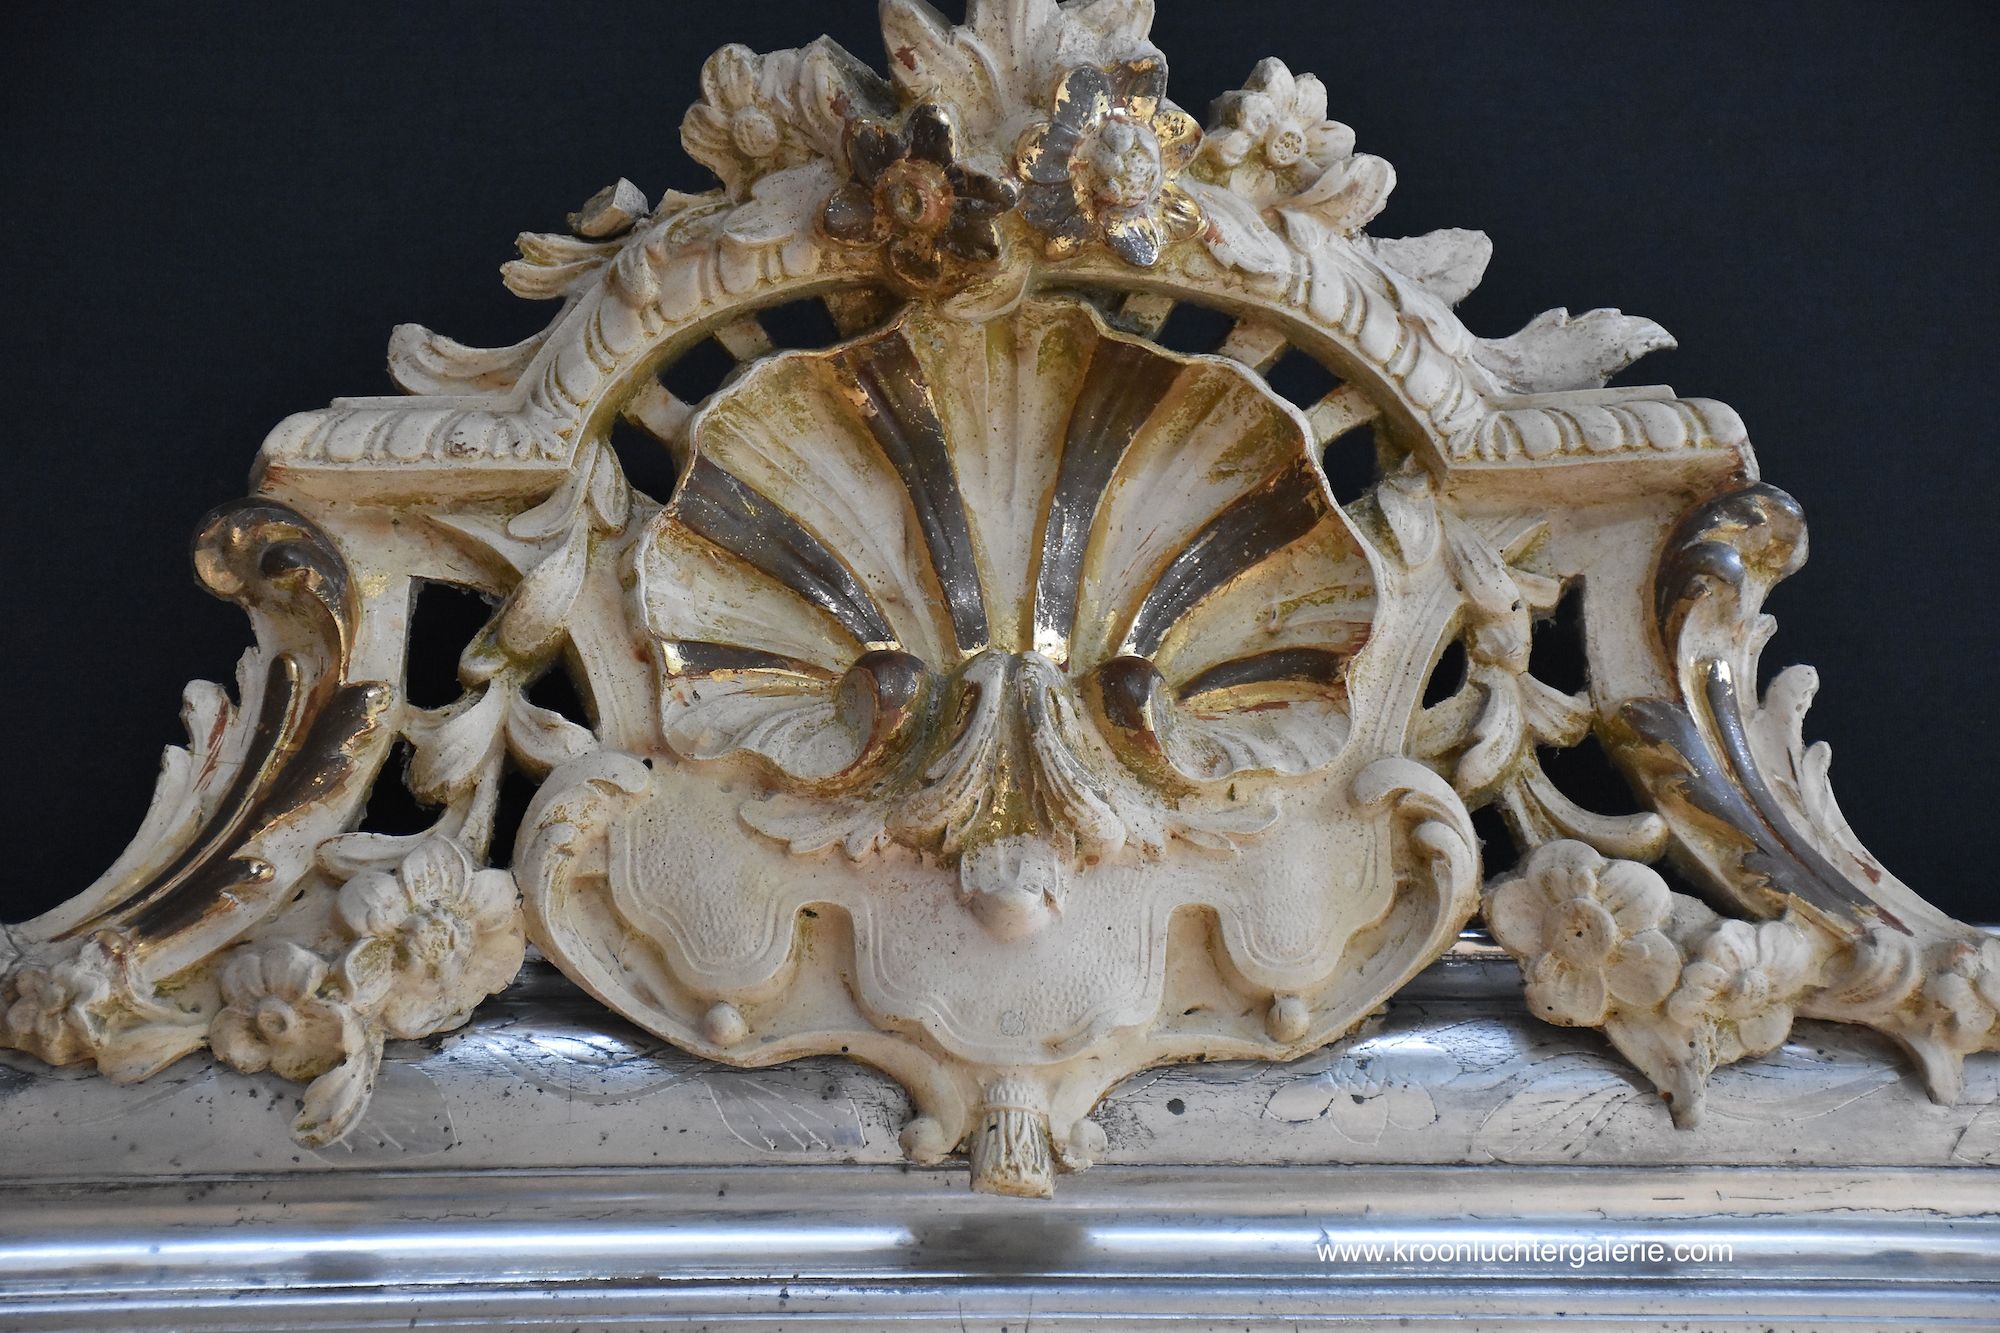 Großer antiker französischer Spiegel mit einer Krone